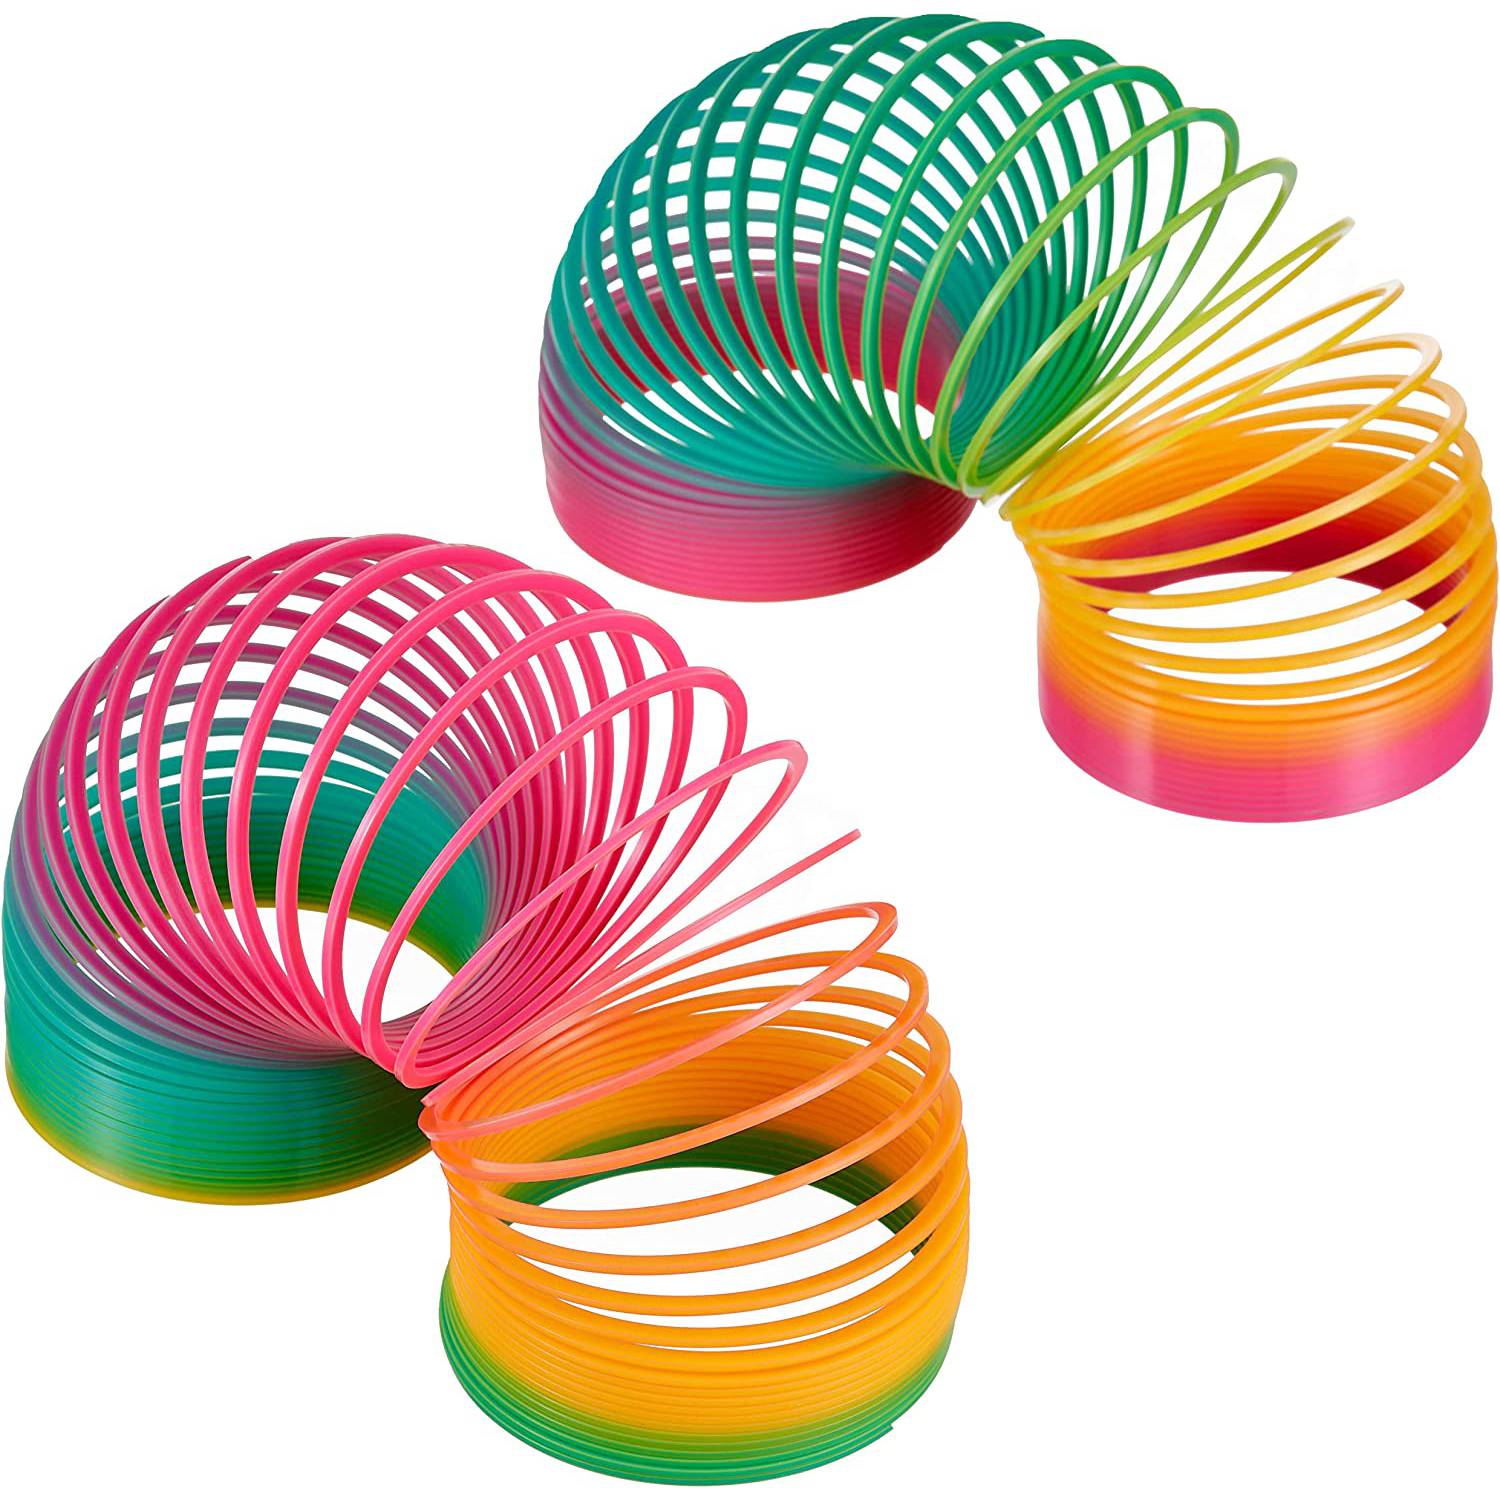 Muelle de juguete arcoíris y producto de plástico en estudio aislado contra  una maqueta de fondo azul juguetes flexibles espirales de colores y  artículos infantiles estirados para jugar y divertirse